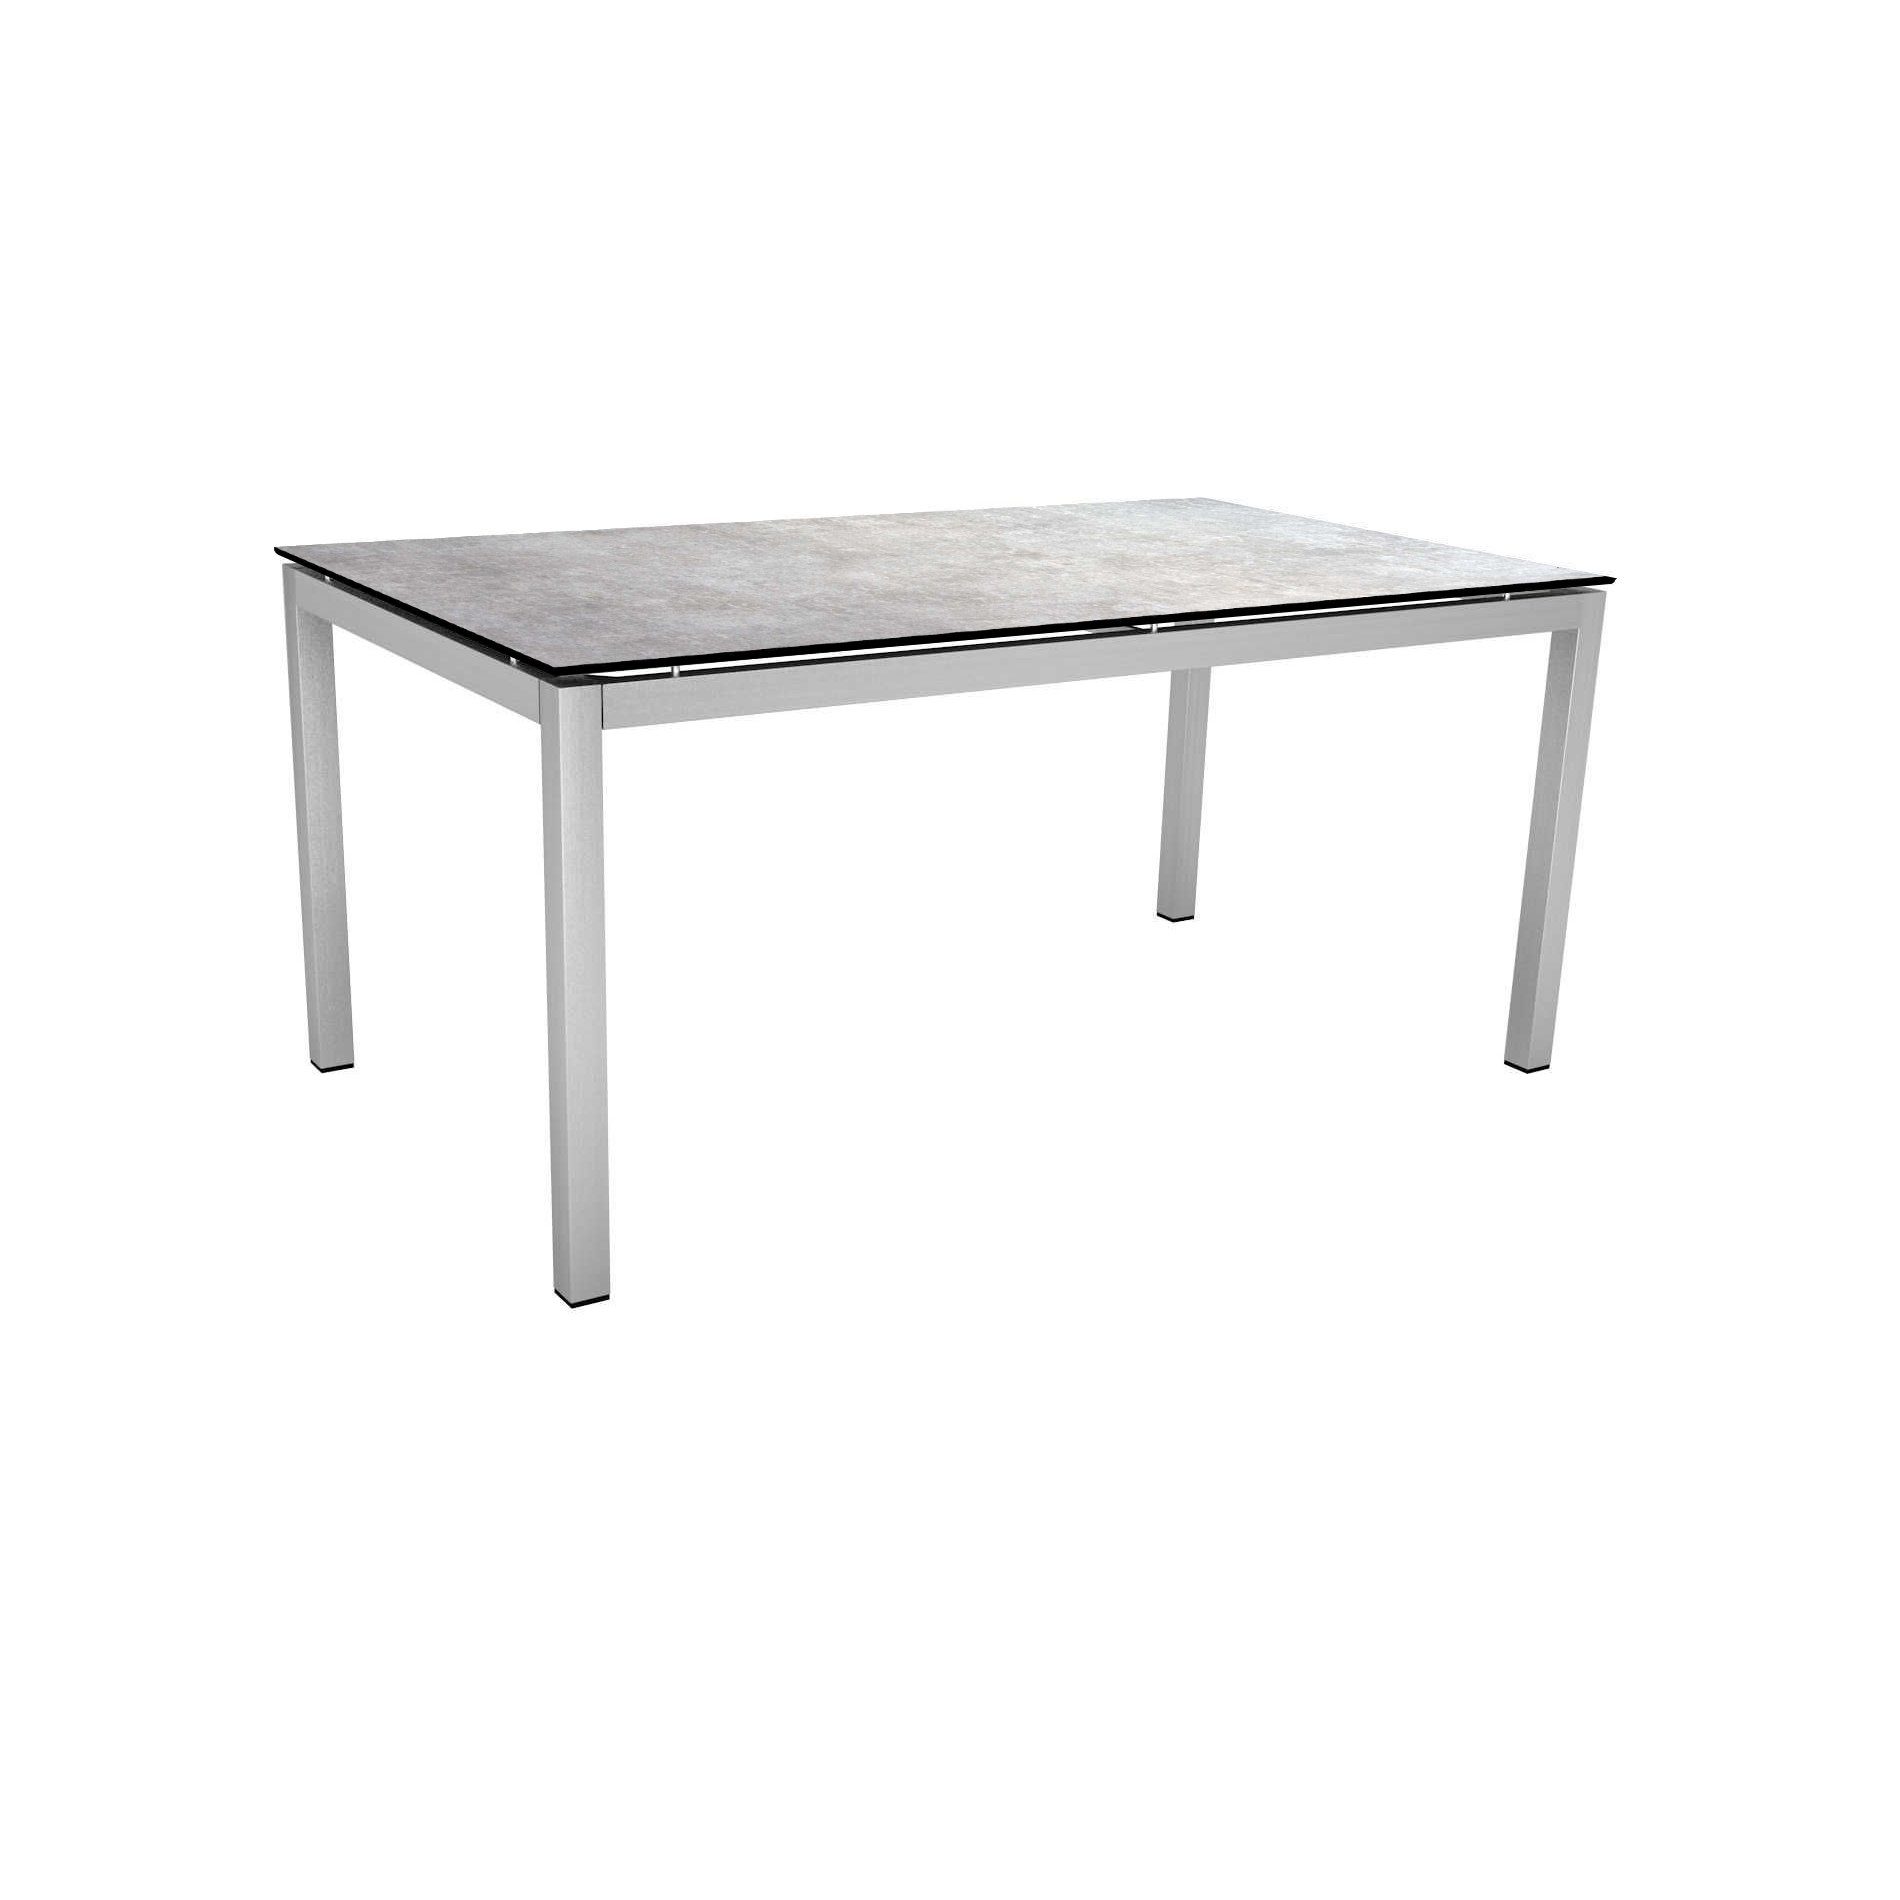 Stern Tischsystem, Gestell Edelstahl Vierkantrohr, Tischplatte HPL Metallic grau, 160x90 cm